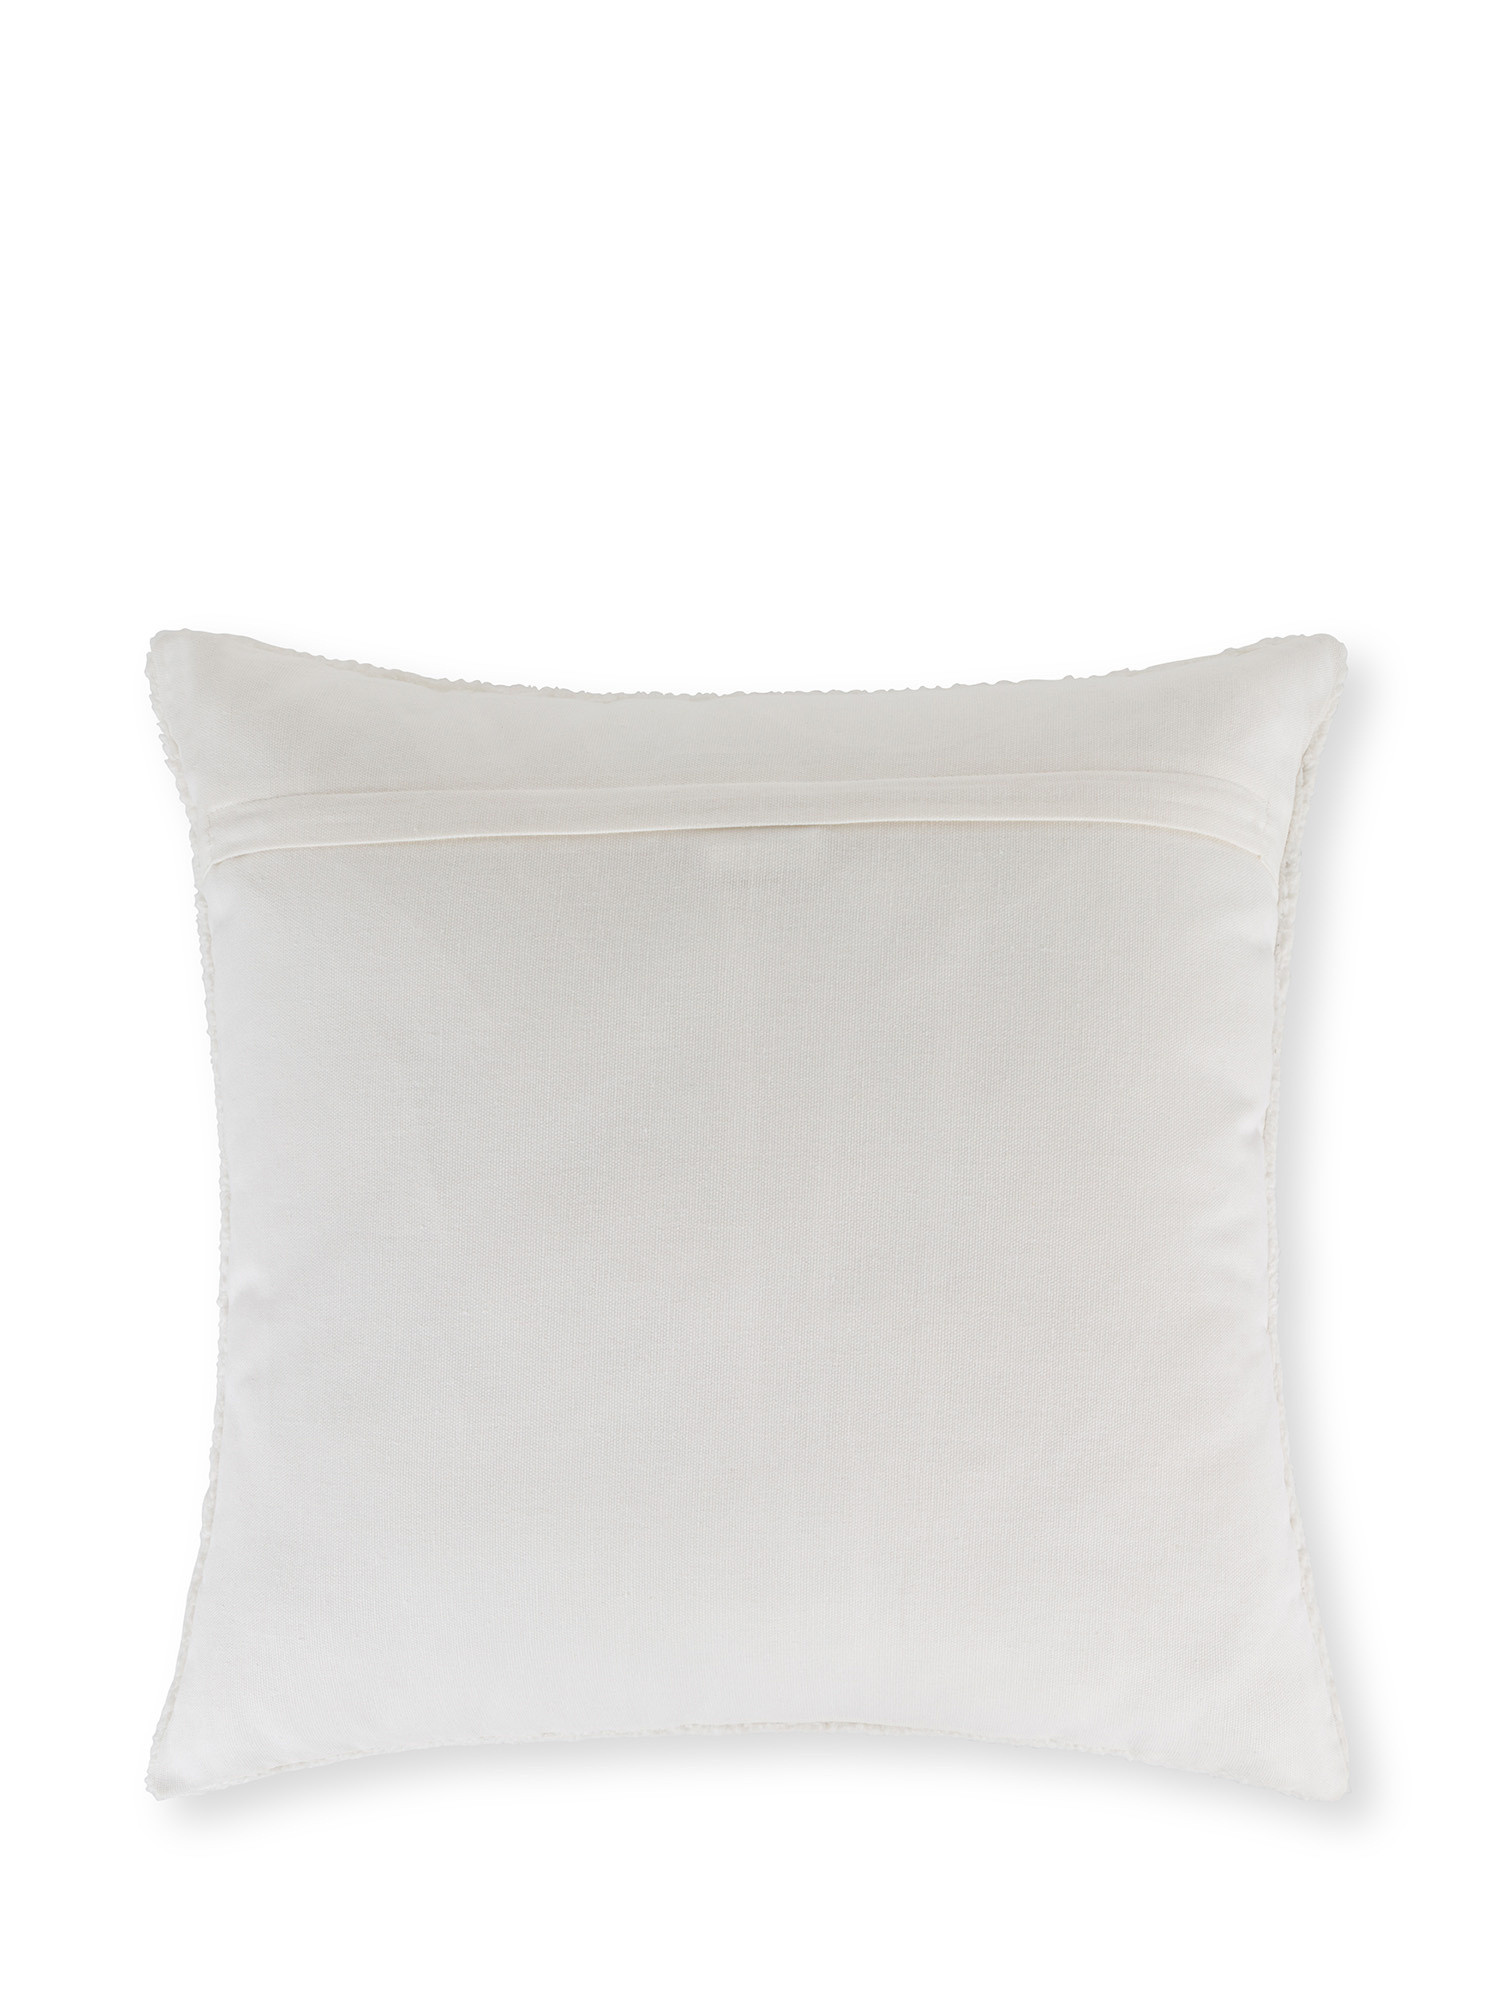 Cuscino in ecopelliccia con ricamo a rilievo sciatori 45x45 cm, Bianco, large image number 1